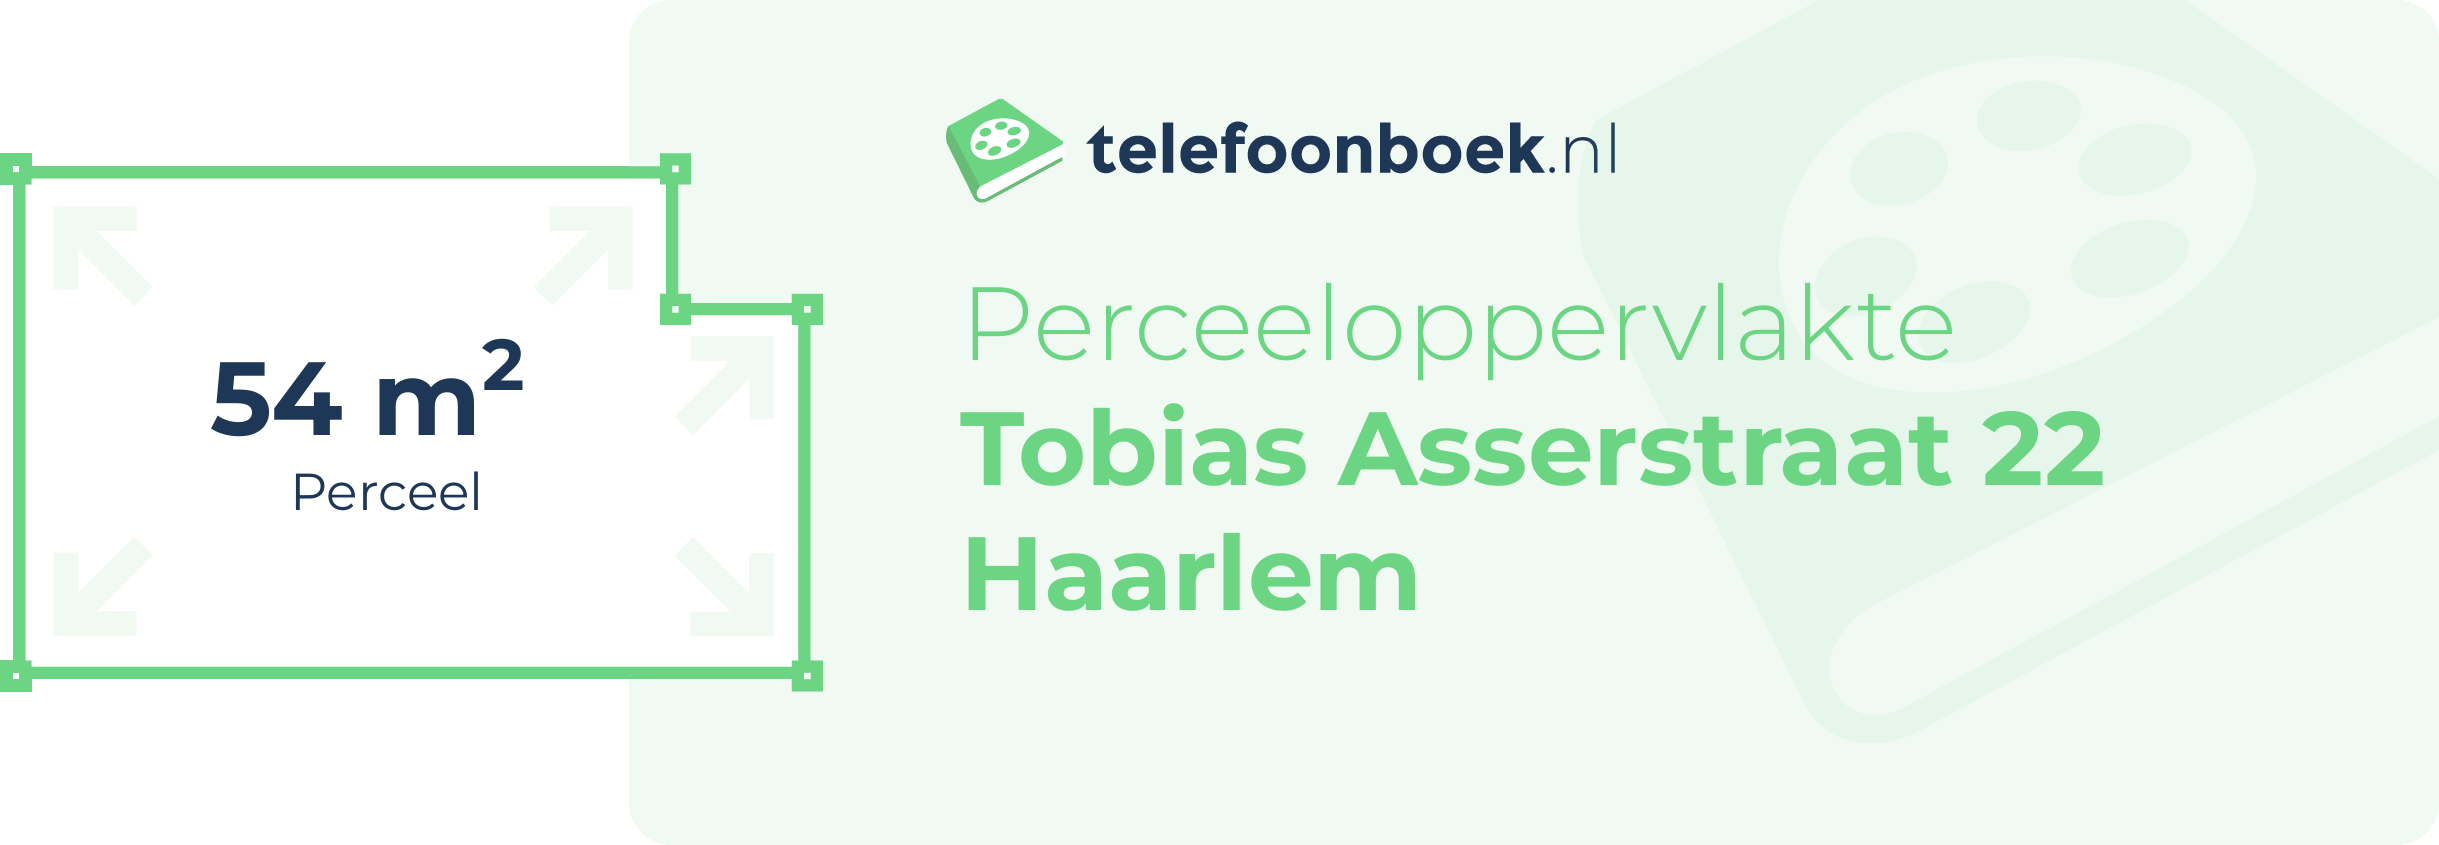 Perceeloppervlakte Tobias Asserstraat 22 Haarlem